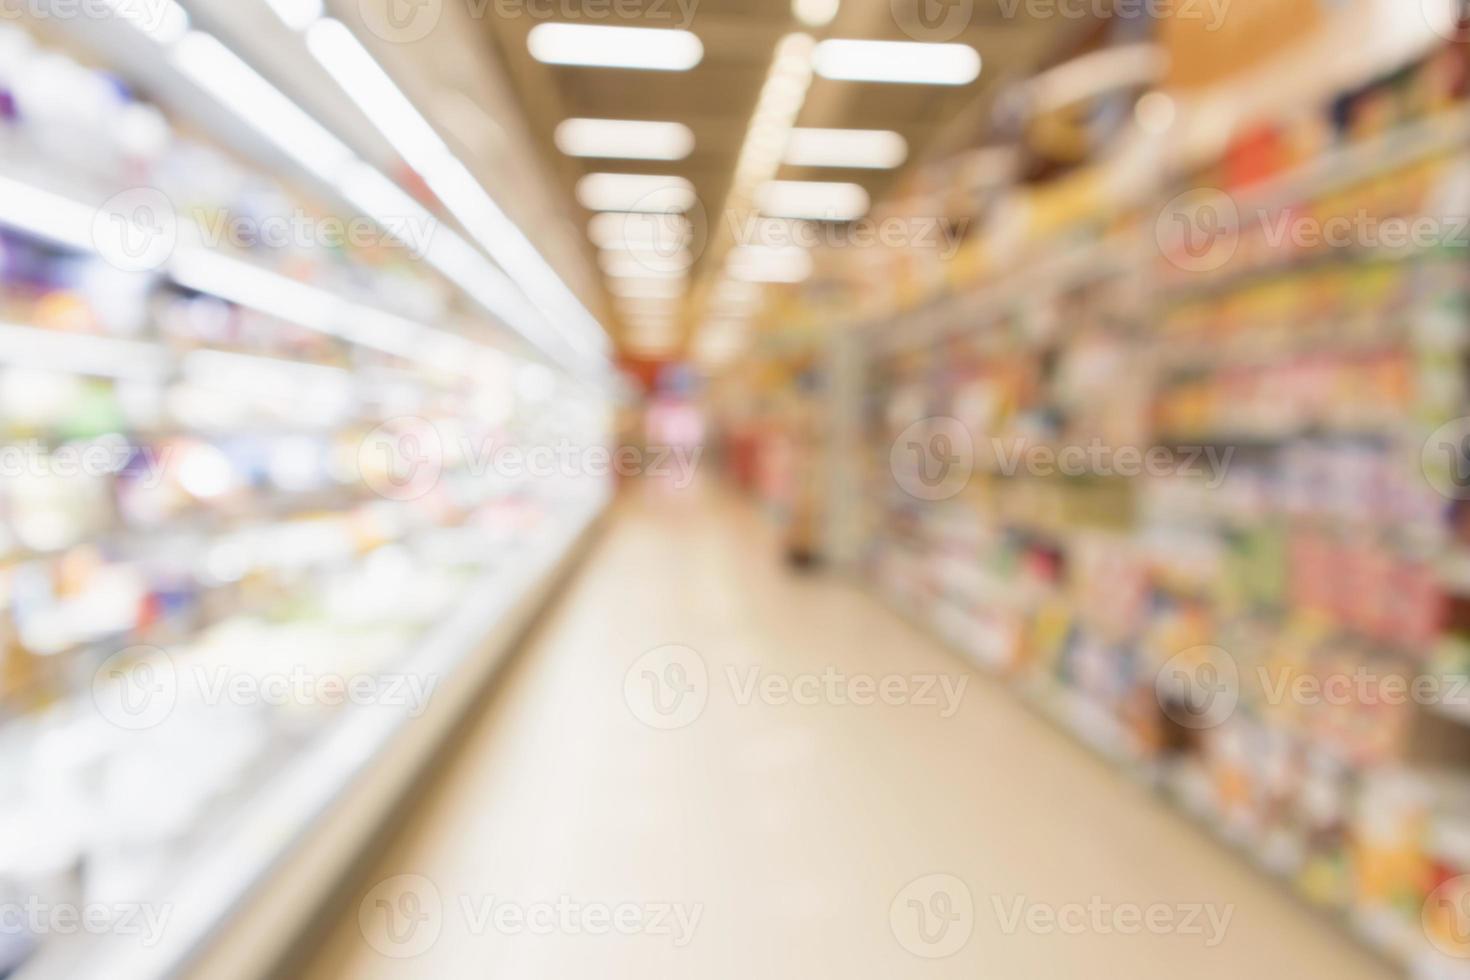 Resumo blur supermercado supermercado prateleiras de geladeira com garrafas de leite fresco e produtos lácteos foto